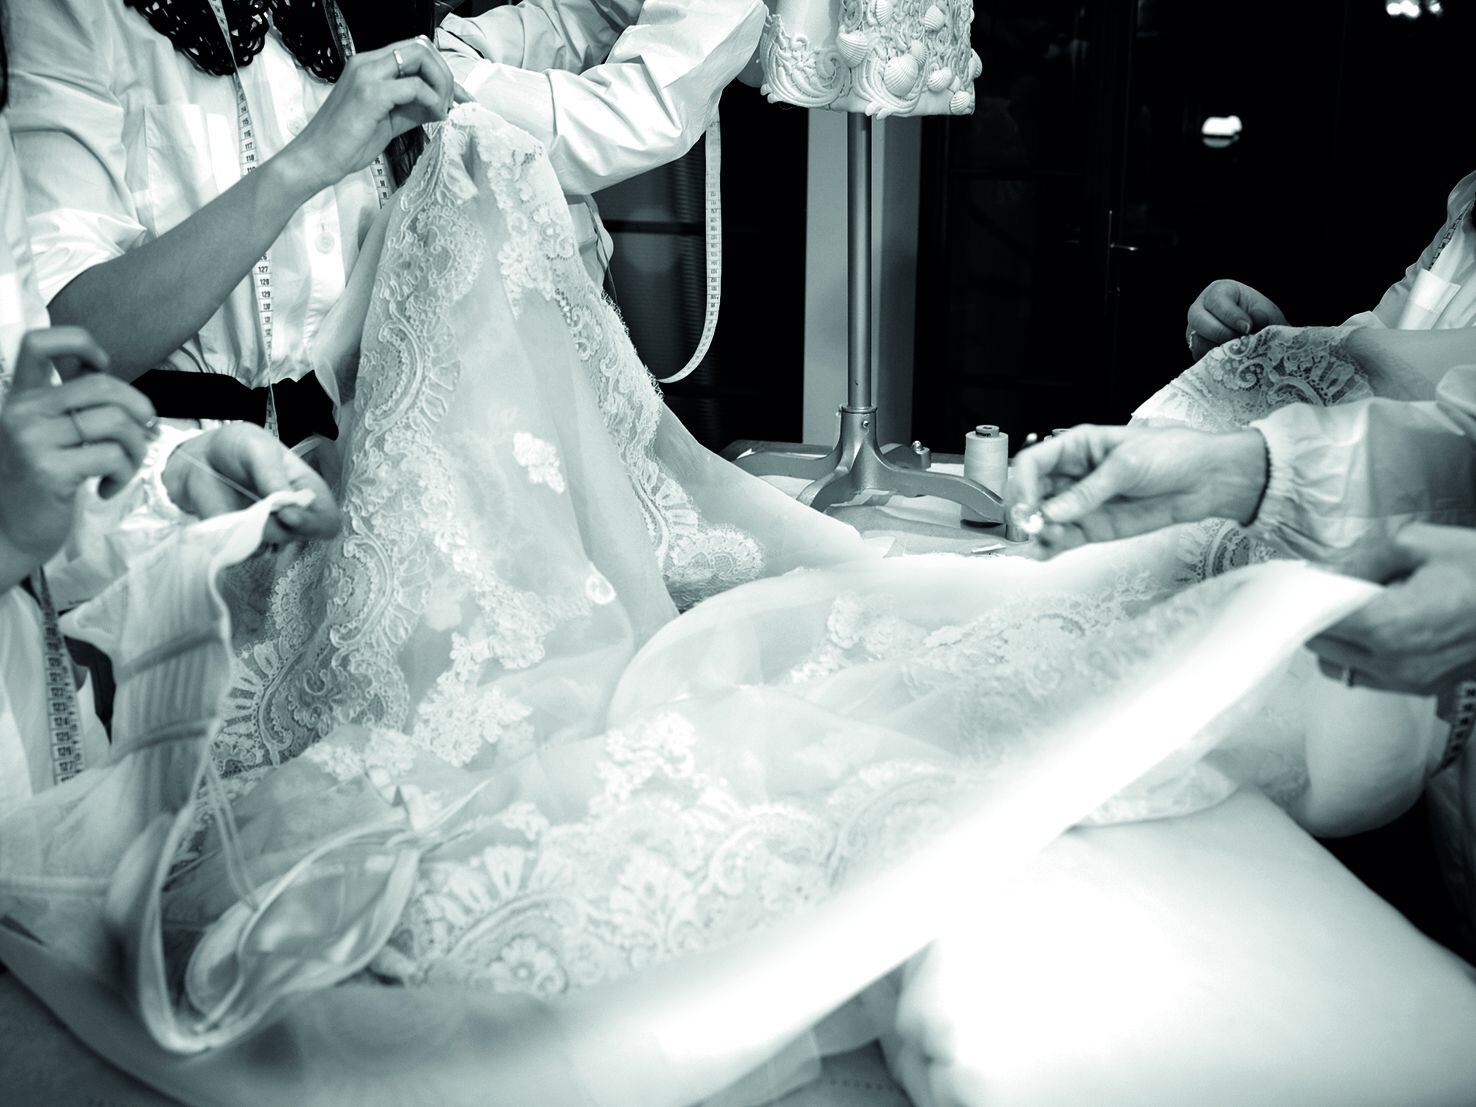 Las costureras de Dolce & Gabbana trabajan en un traje.